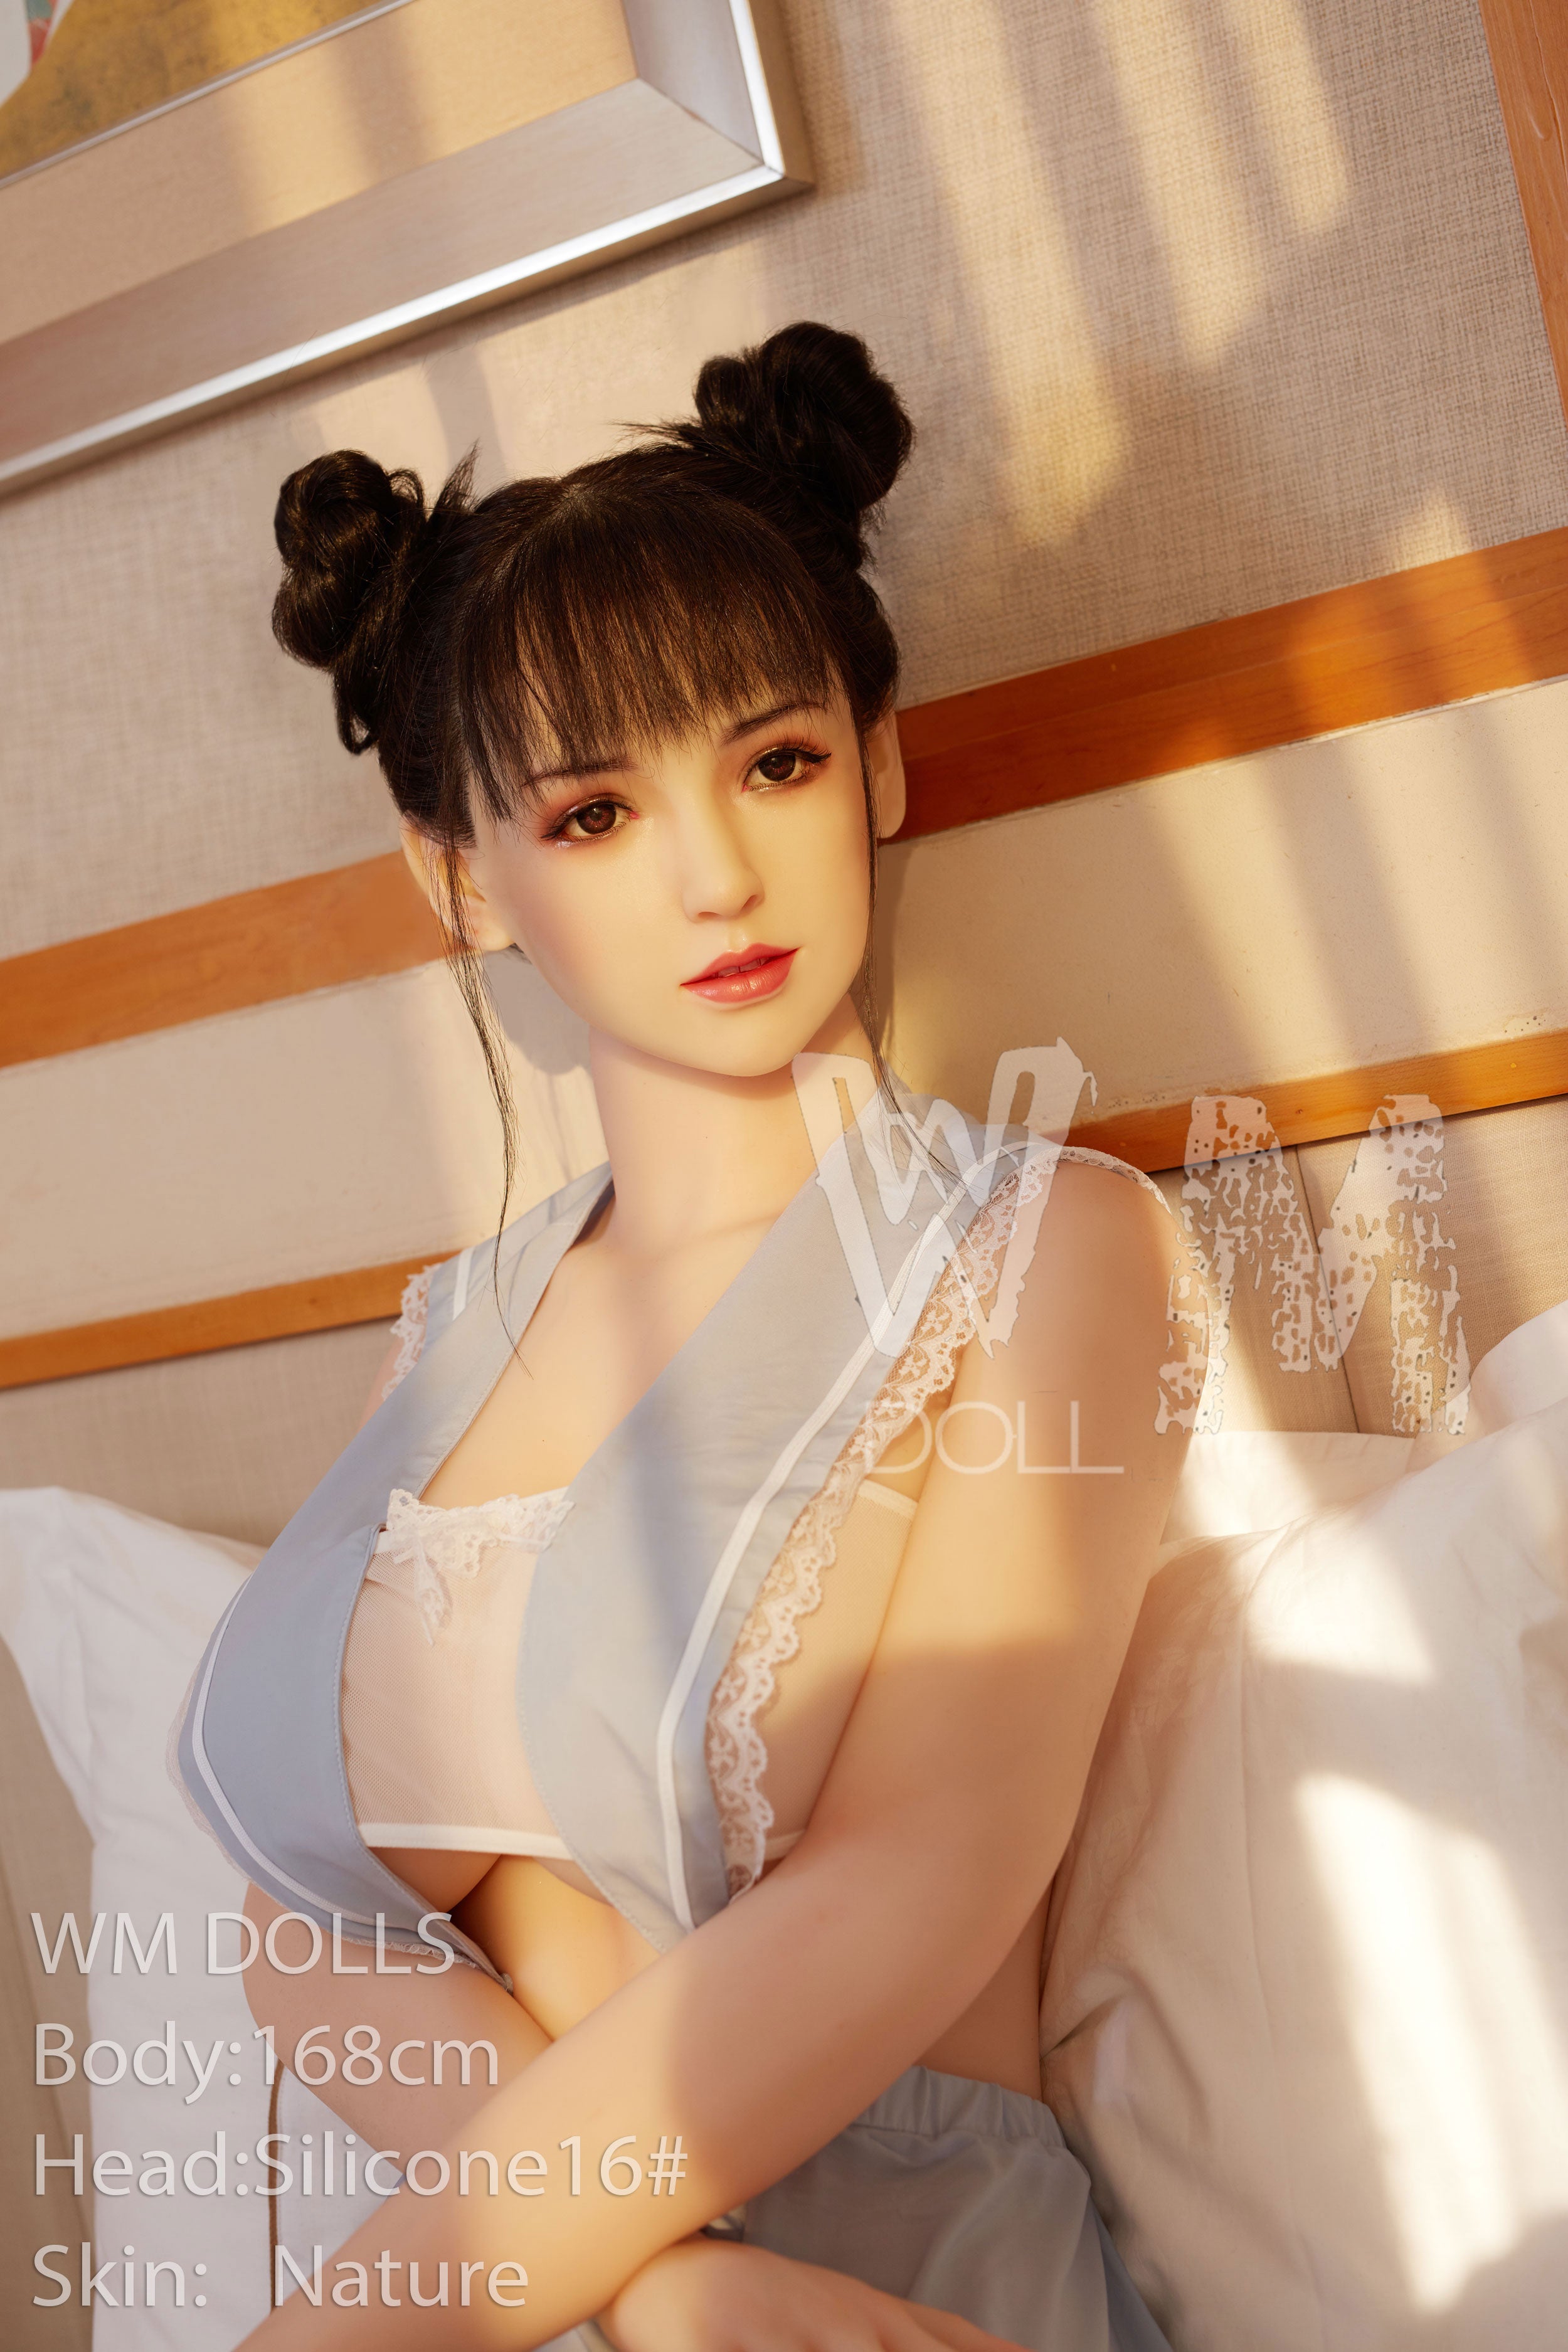 japan housewife sex idols Adult Pics Hq